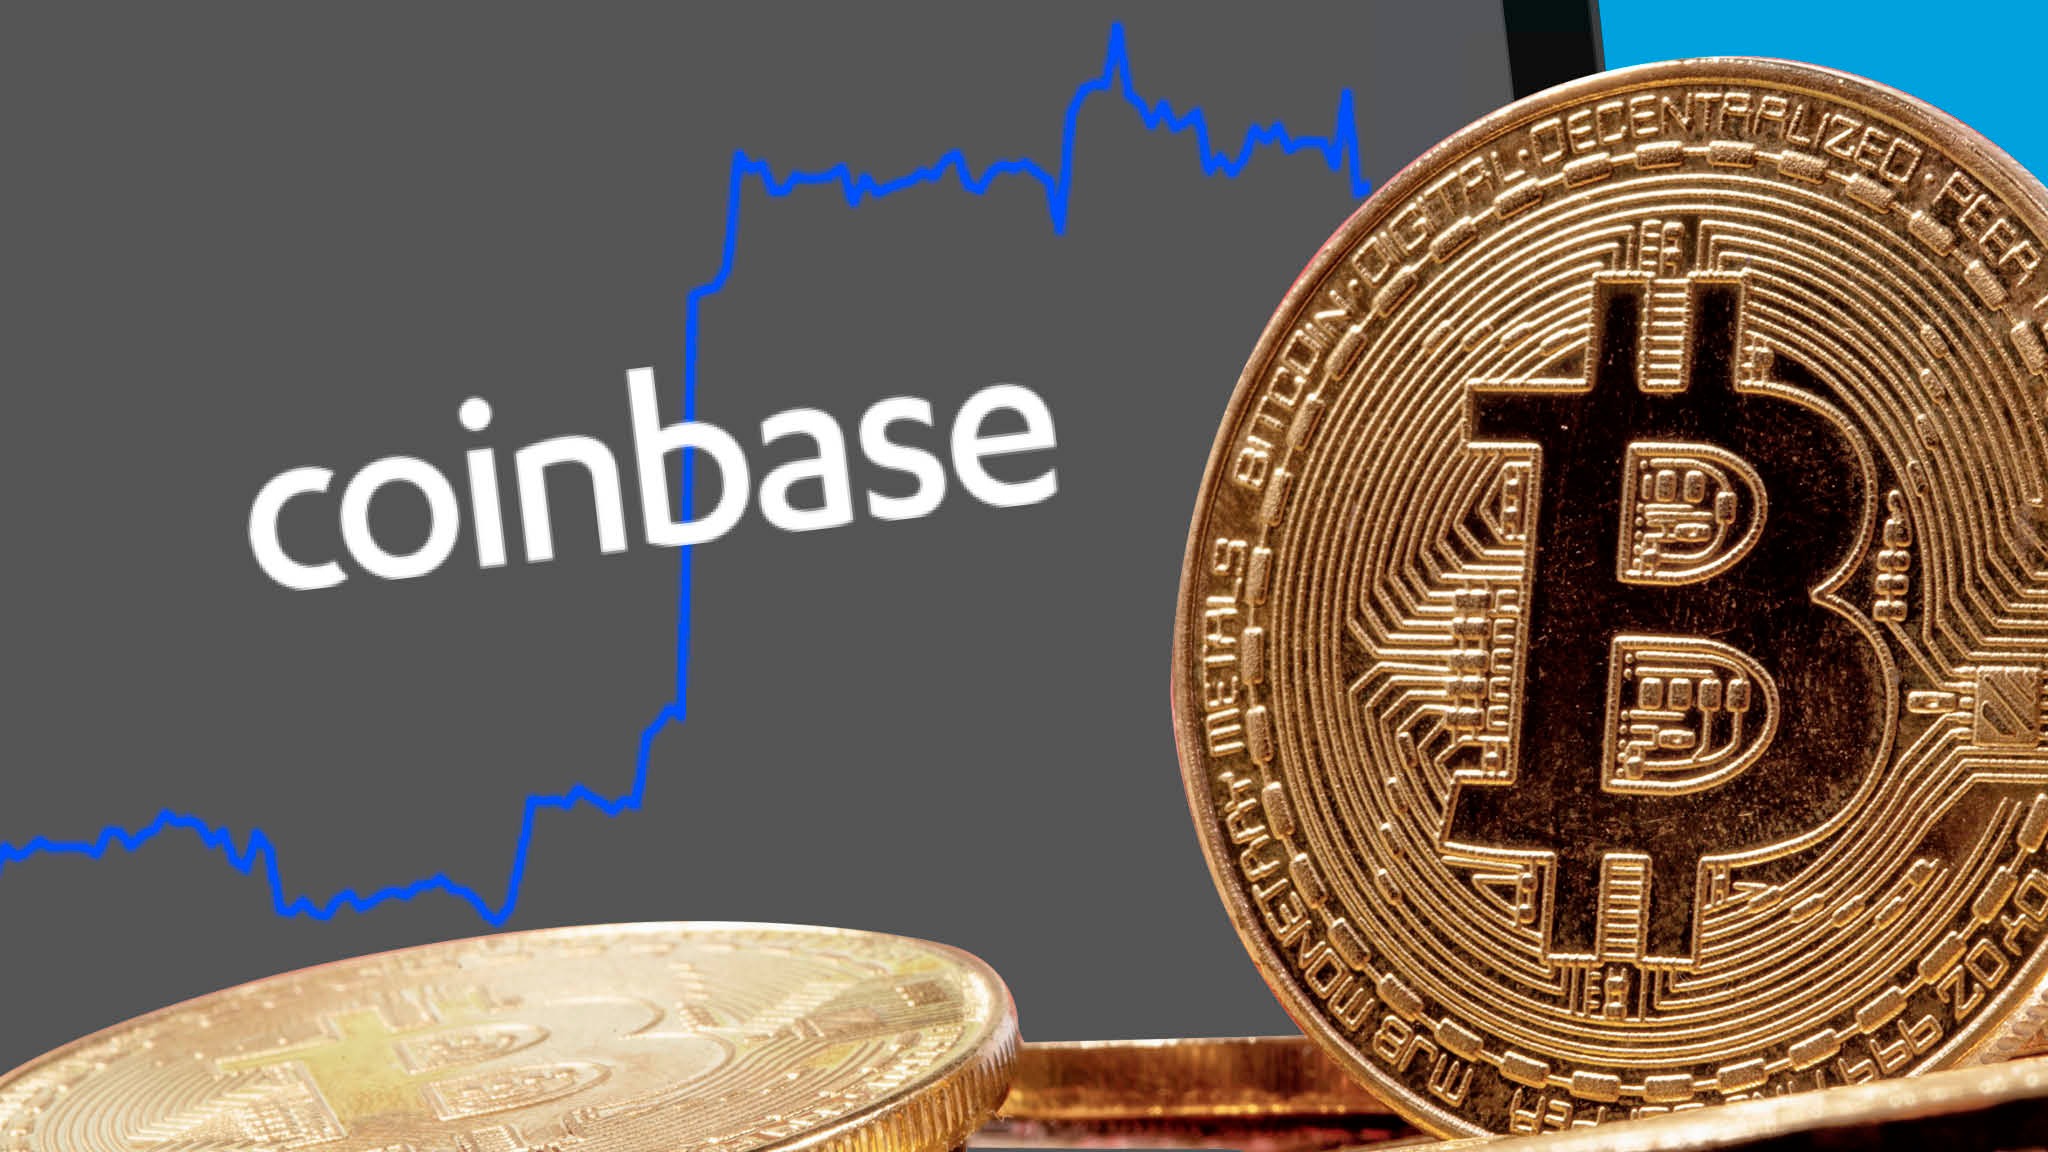 Bitcoin market coinbase 0.00026184 btc to usd